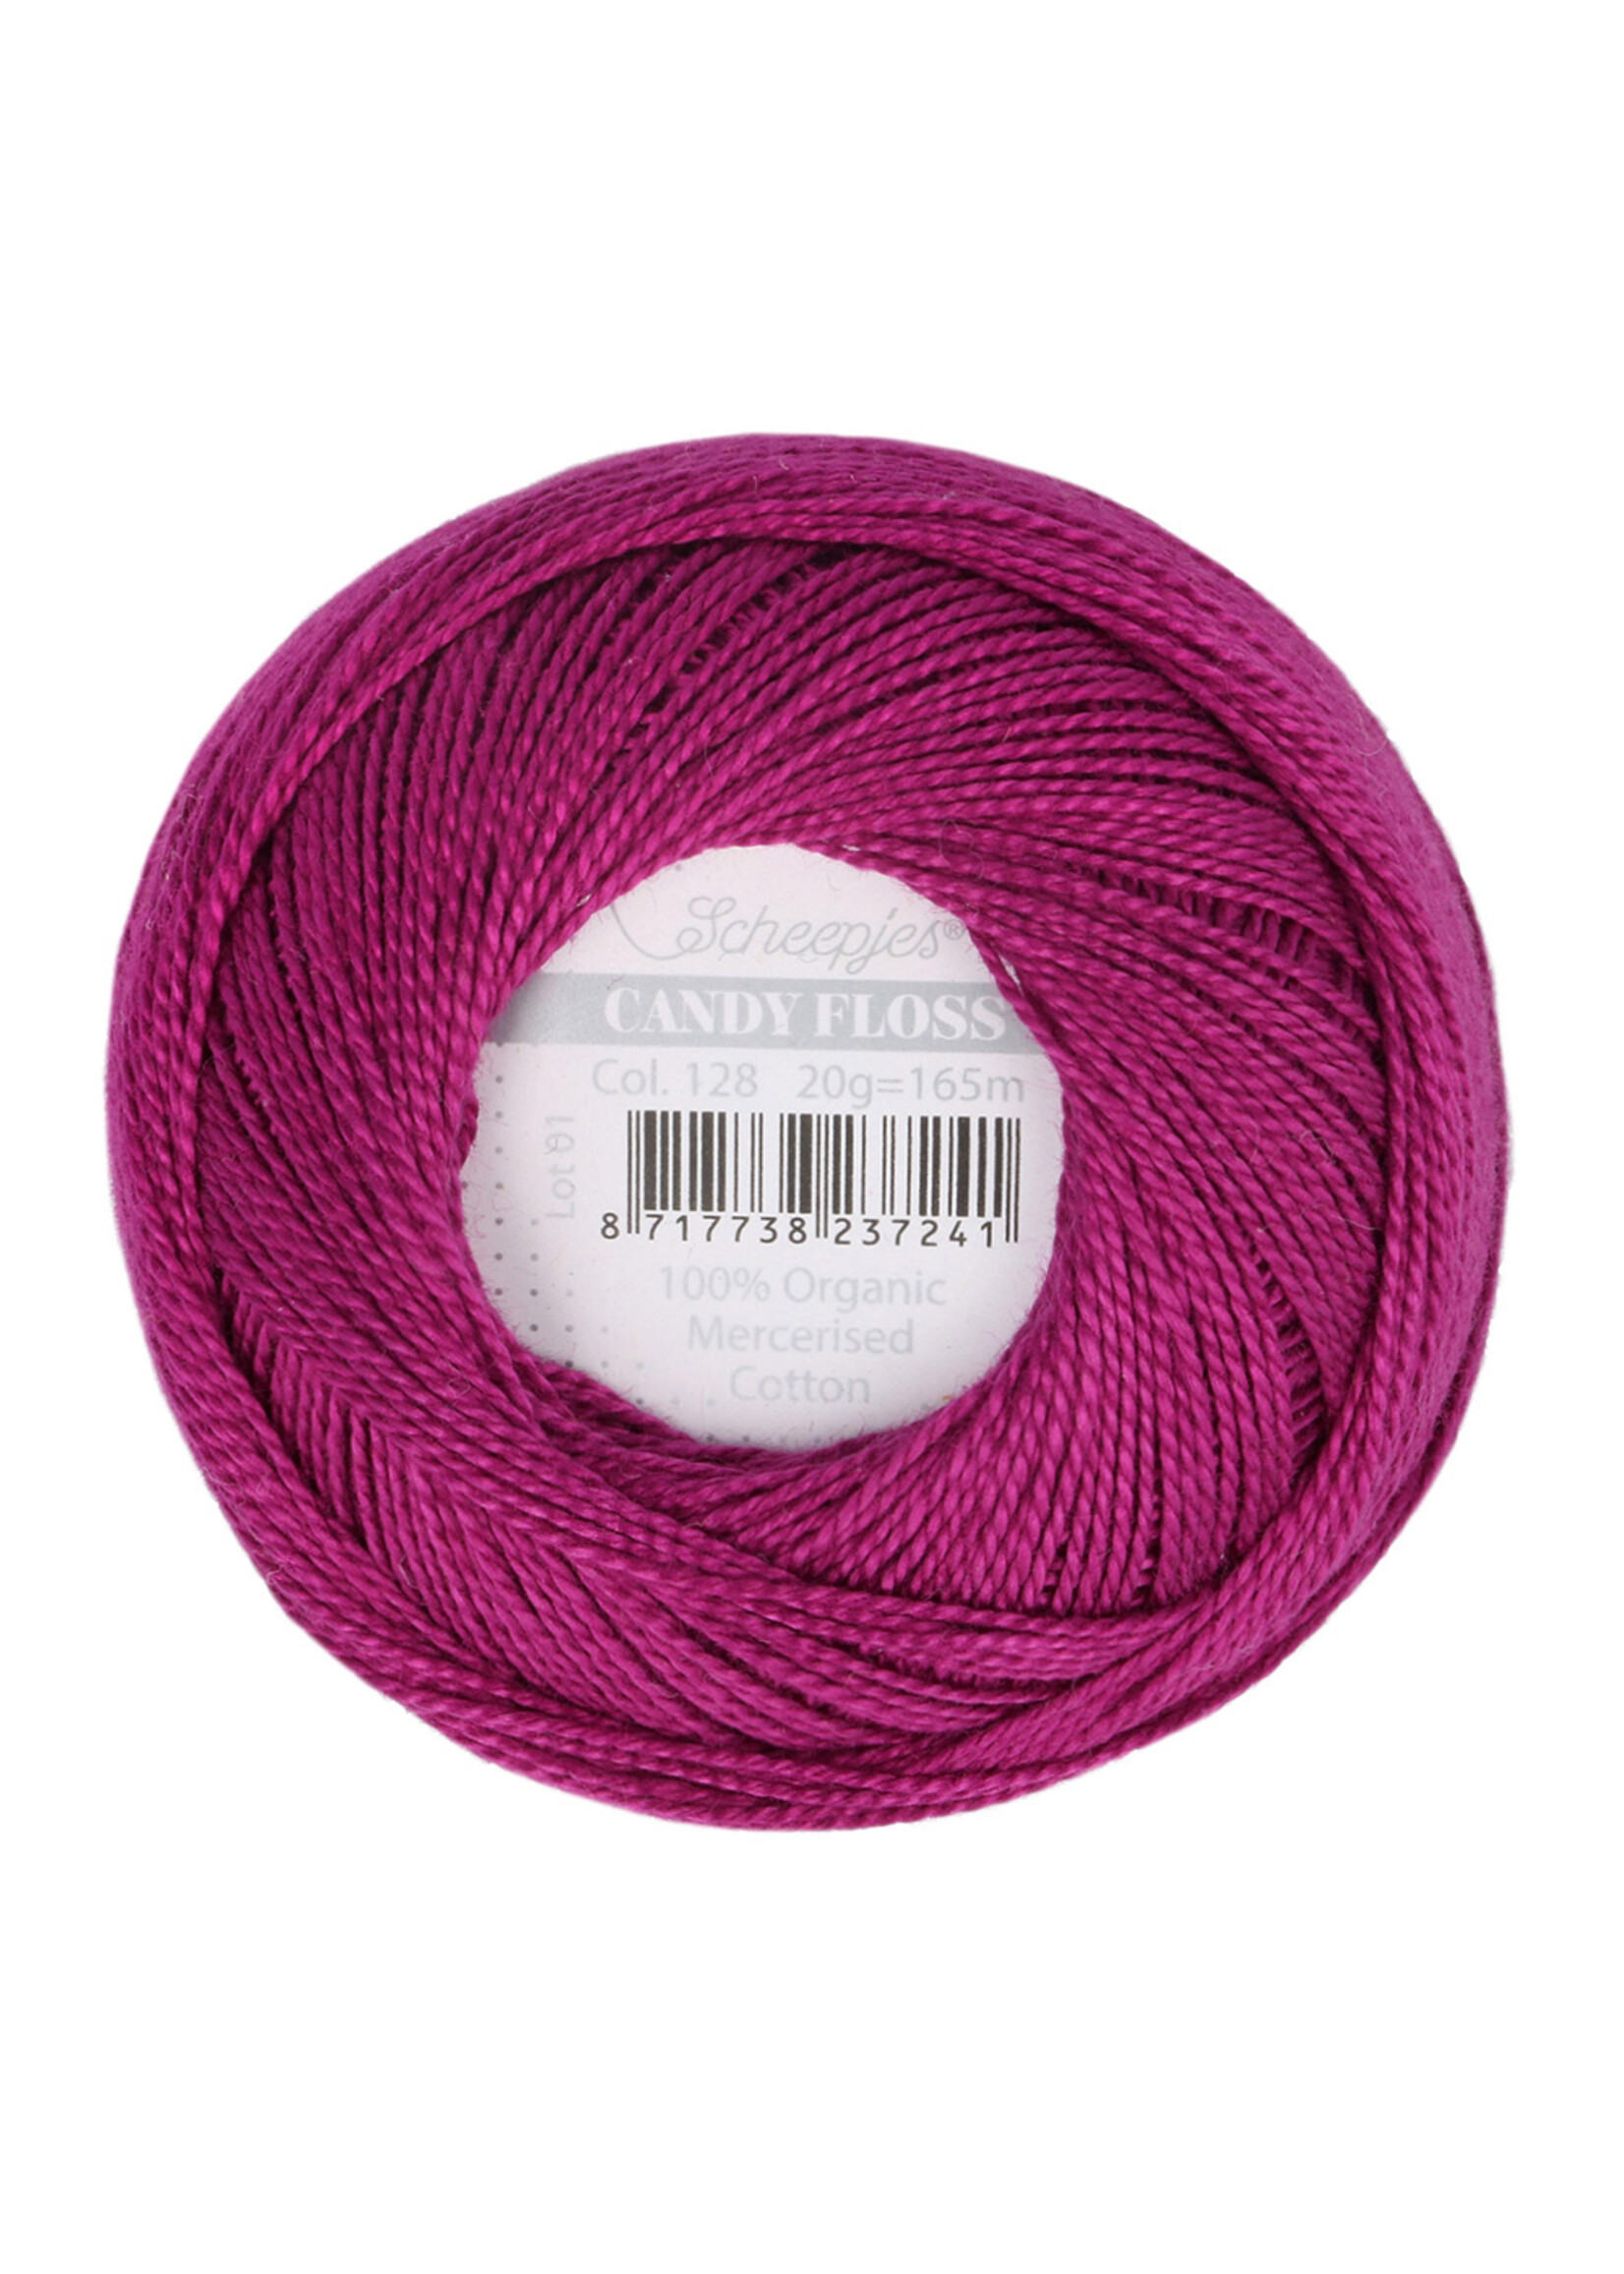 Scheepjes Candy Floss - 128 Tyrian Purple